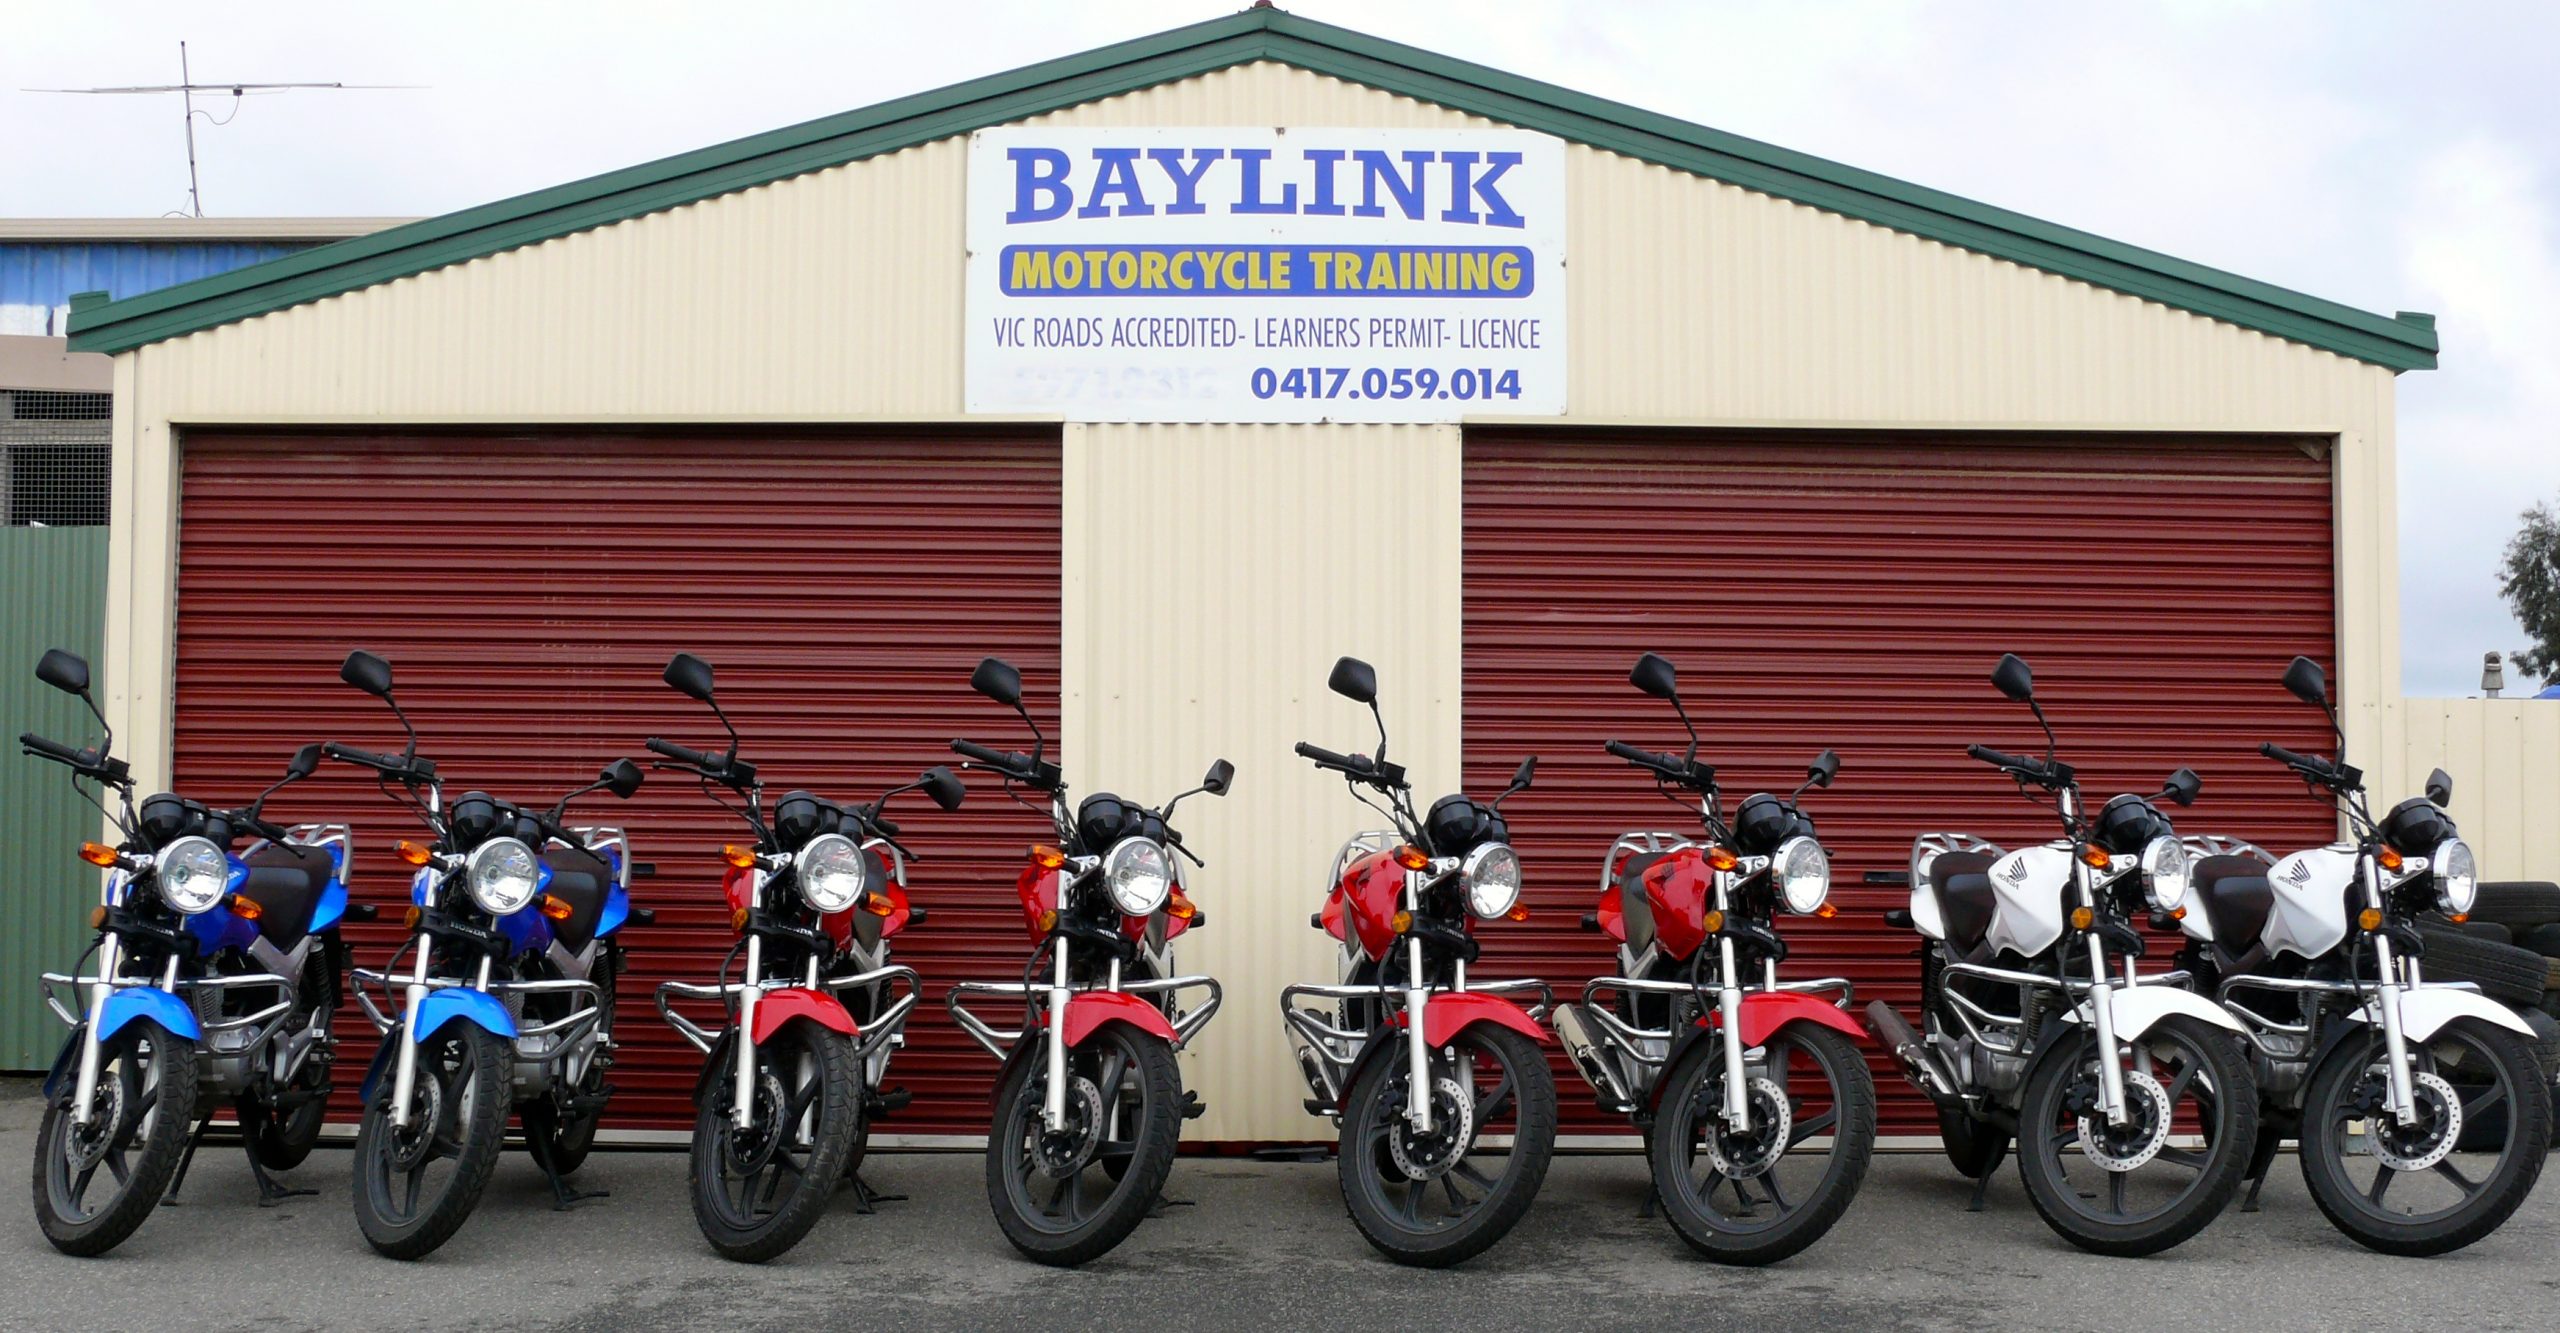 Baylink Motorcycle Training Licence